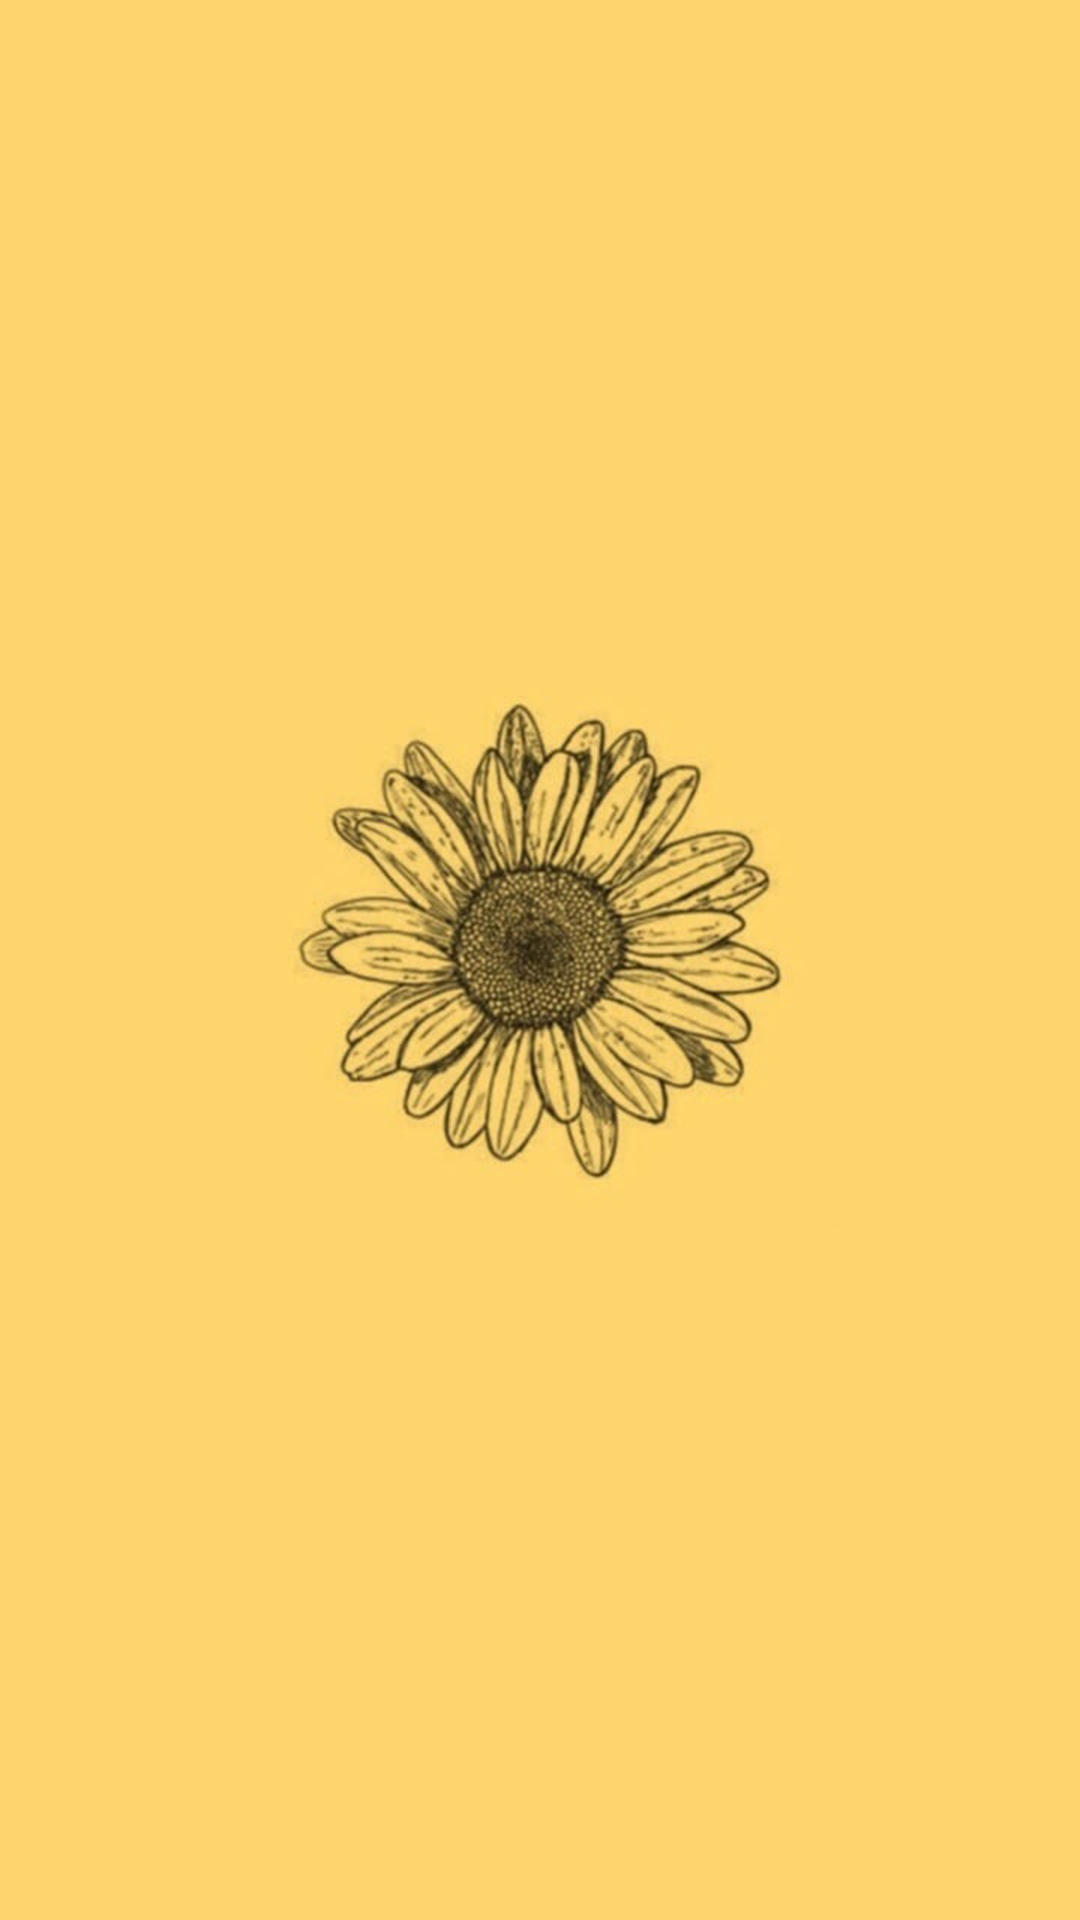 Hoa hướng dương (sunflower): Các bạn đã từng ngắm nhìn một cánh đồng hoa hướng dương ở mùa hè chưa? Chúng cứ như một bức tranh vẽ nhiều màu sắc vậy! Hãy xem hình ảnh này để cảm nhận sự tươi vui và năng lượng tích cực mà loài hoa này mang lại. 